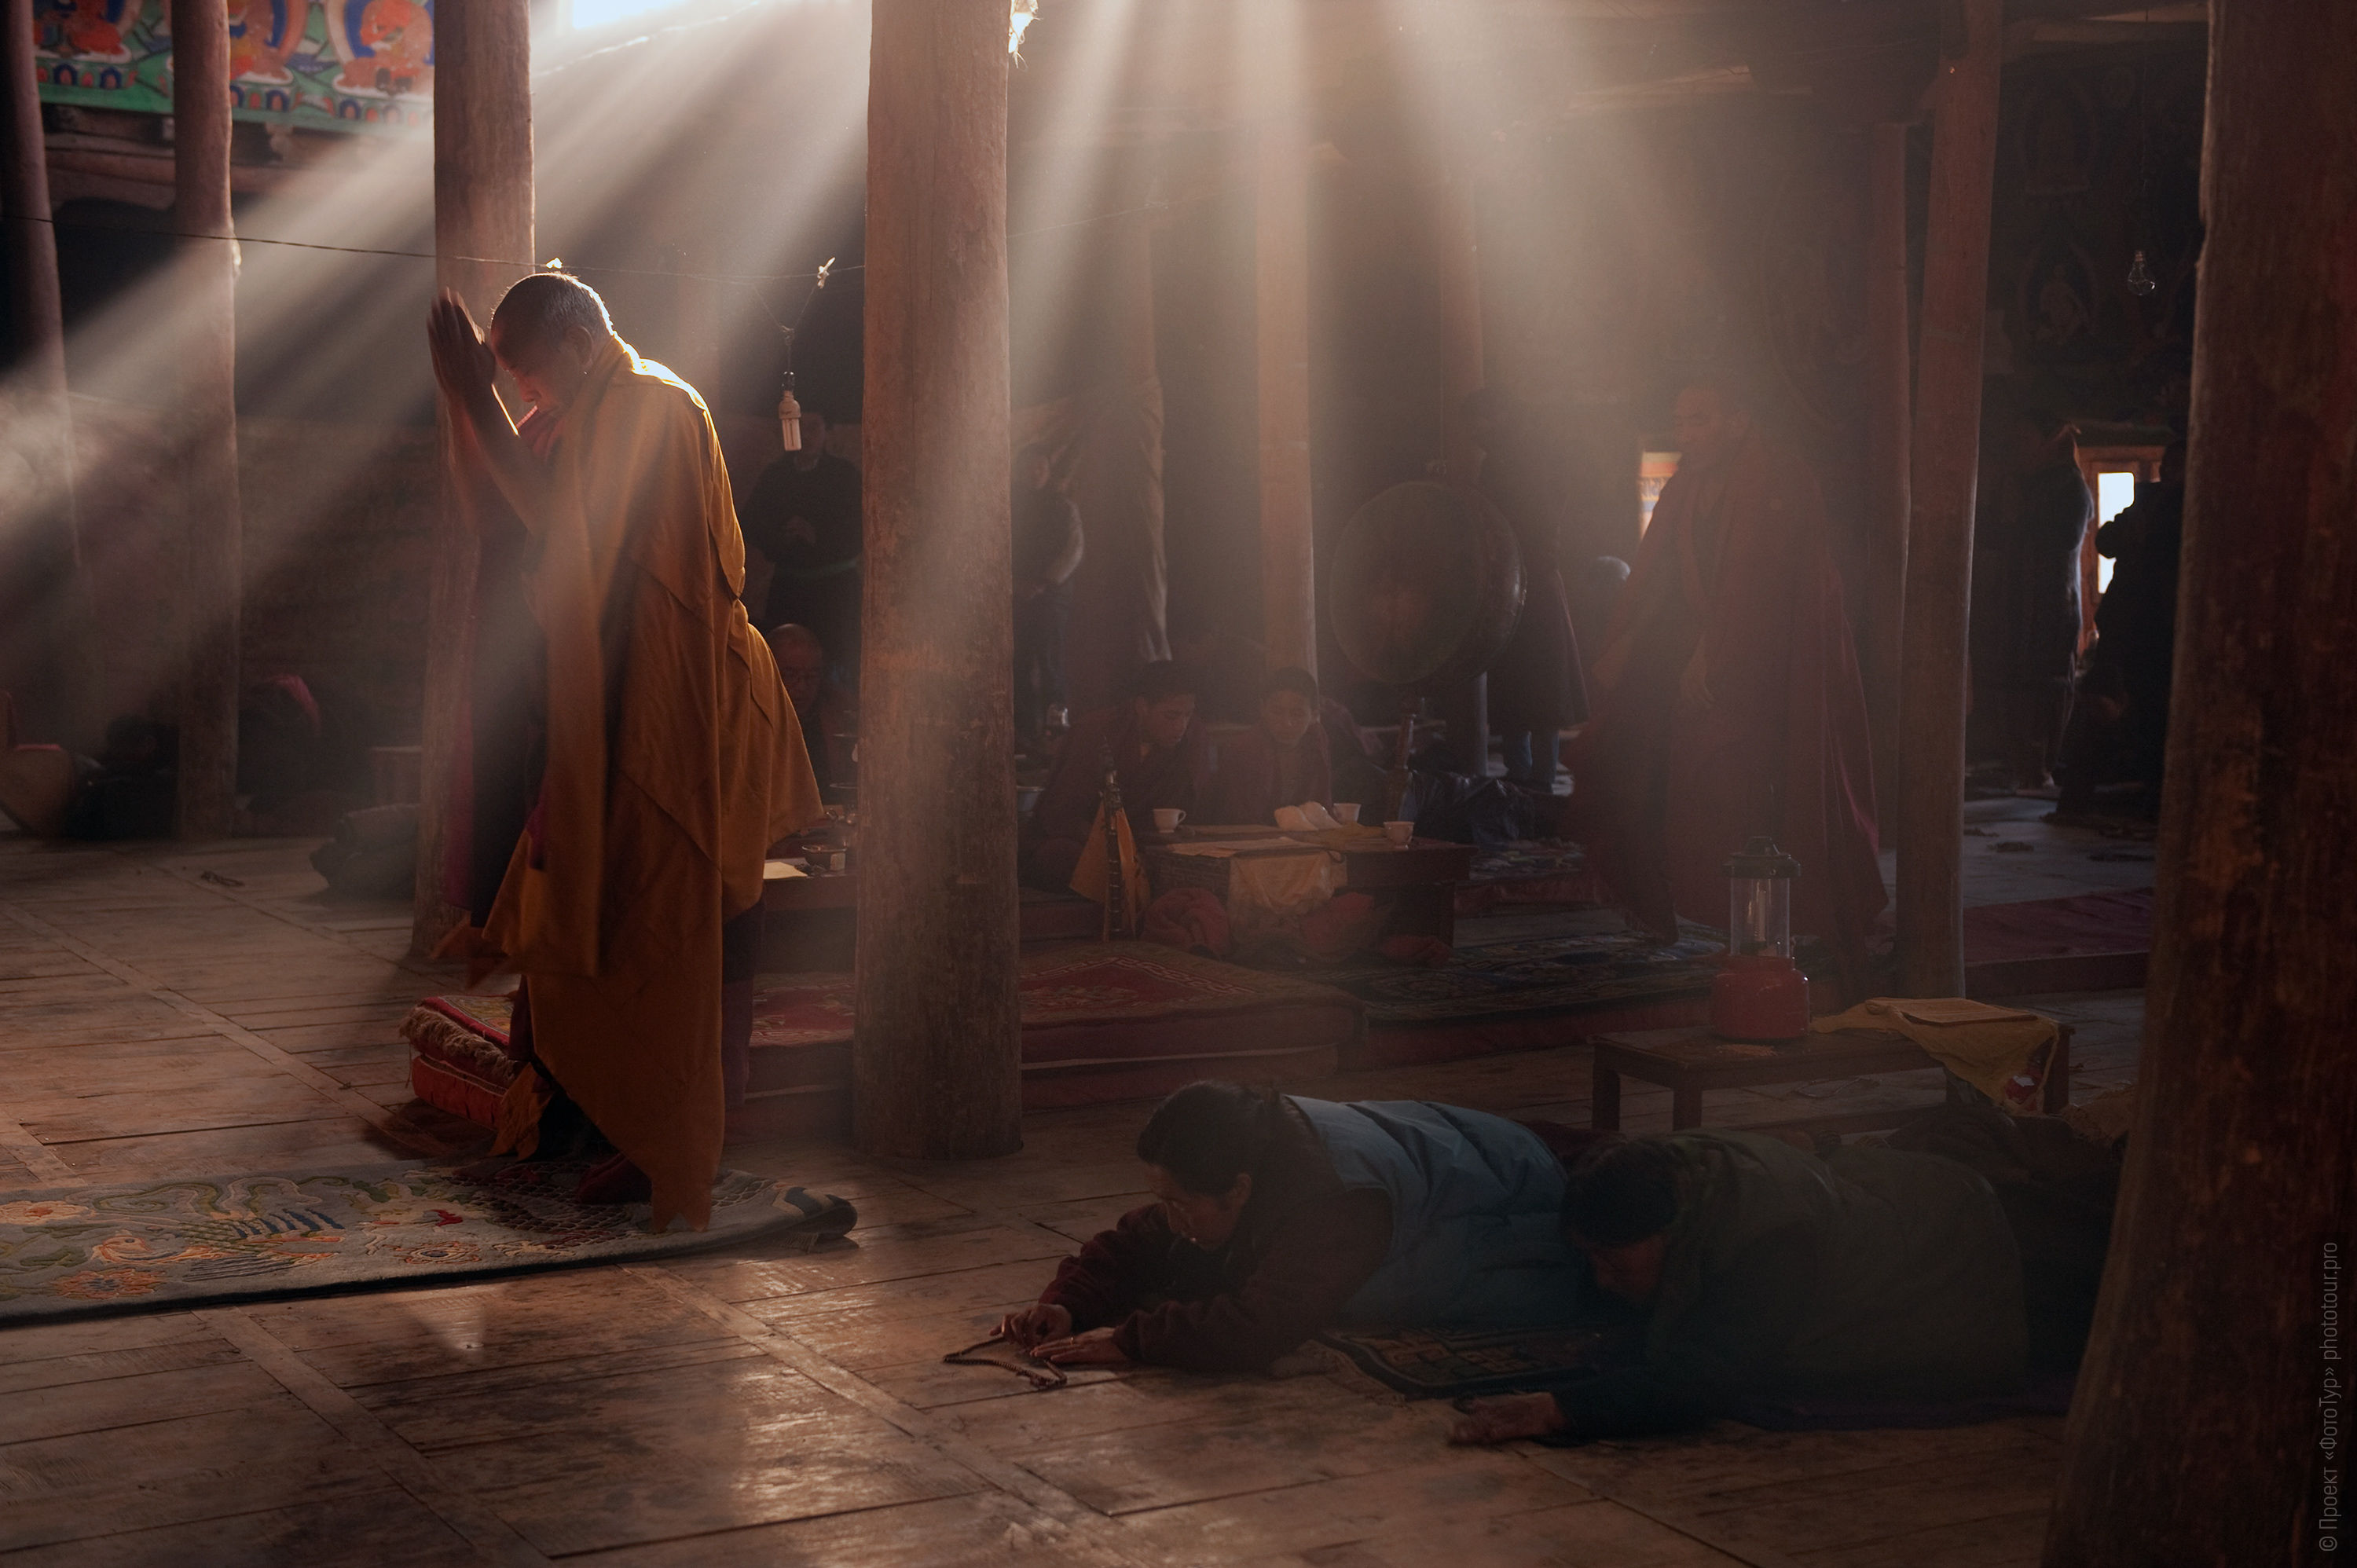 Буддийский монастырь Тиксей Гонпа. Фототур по Ладакху, май 2018 года.